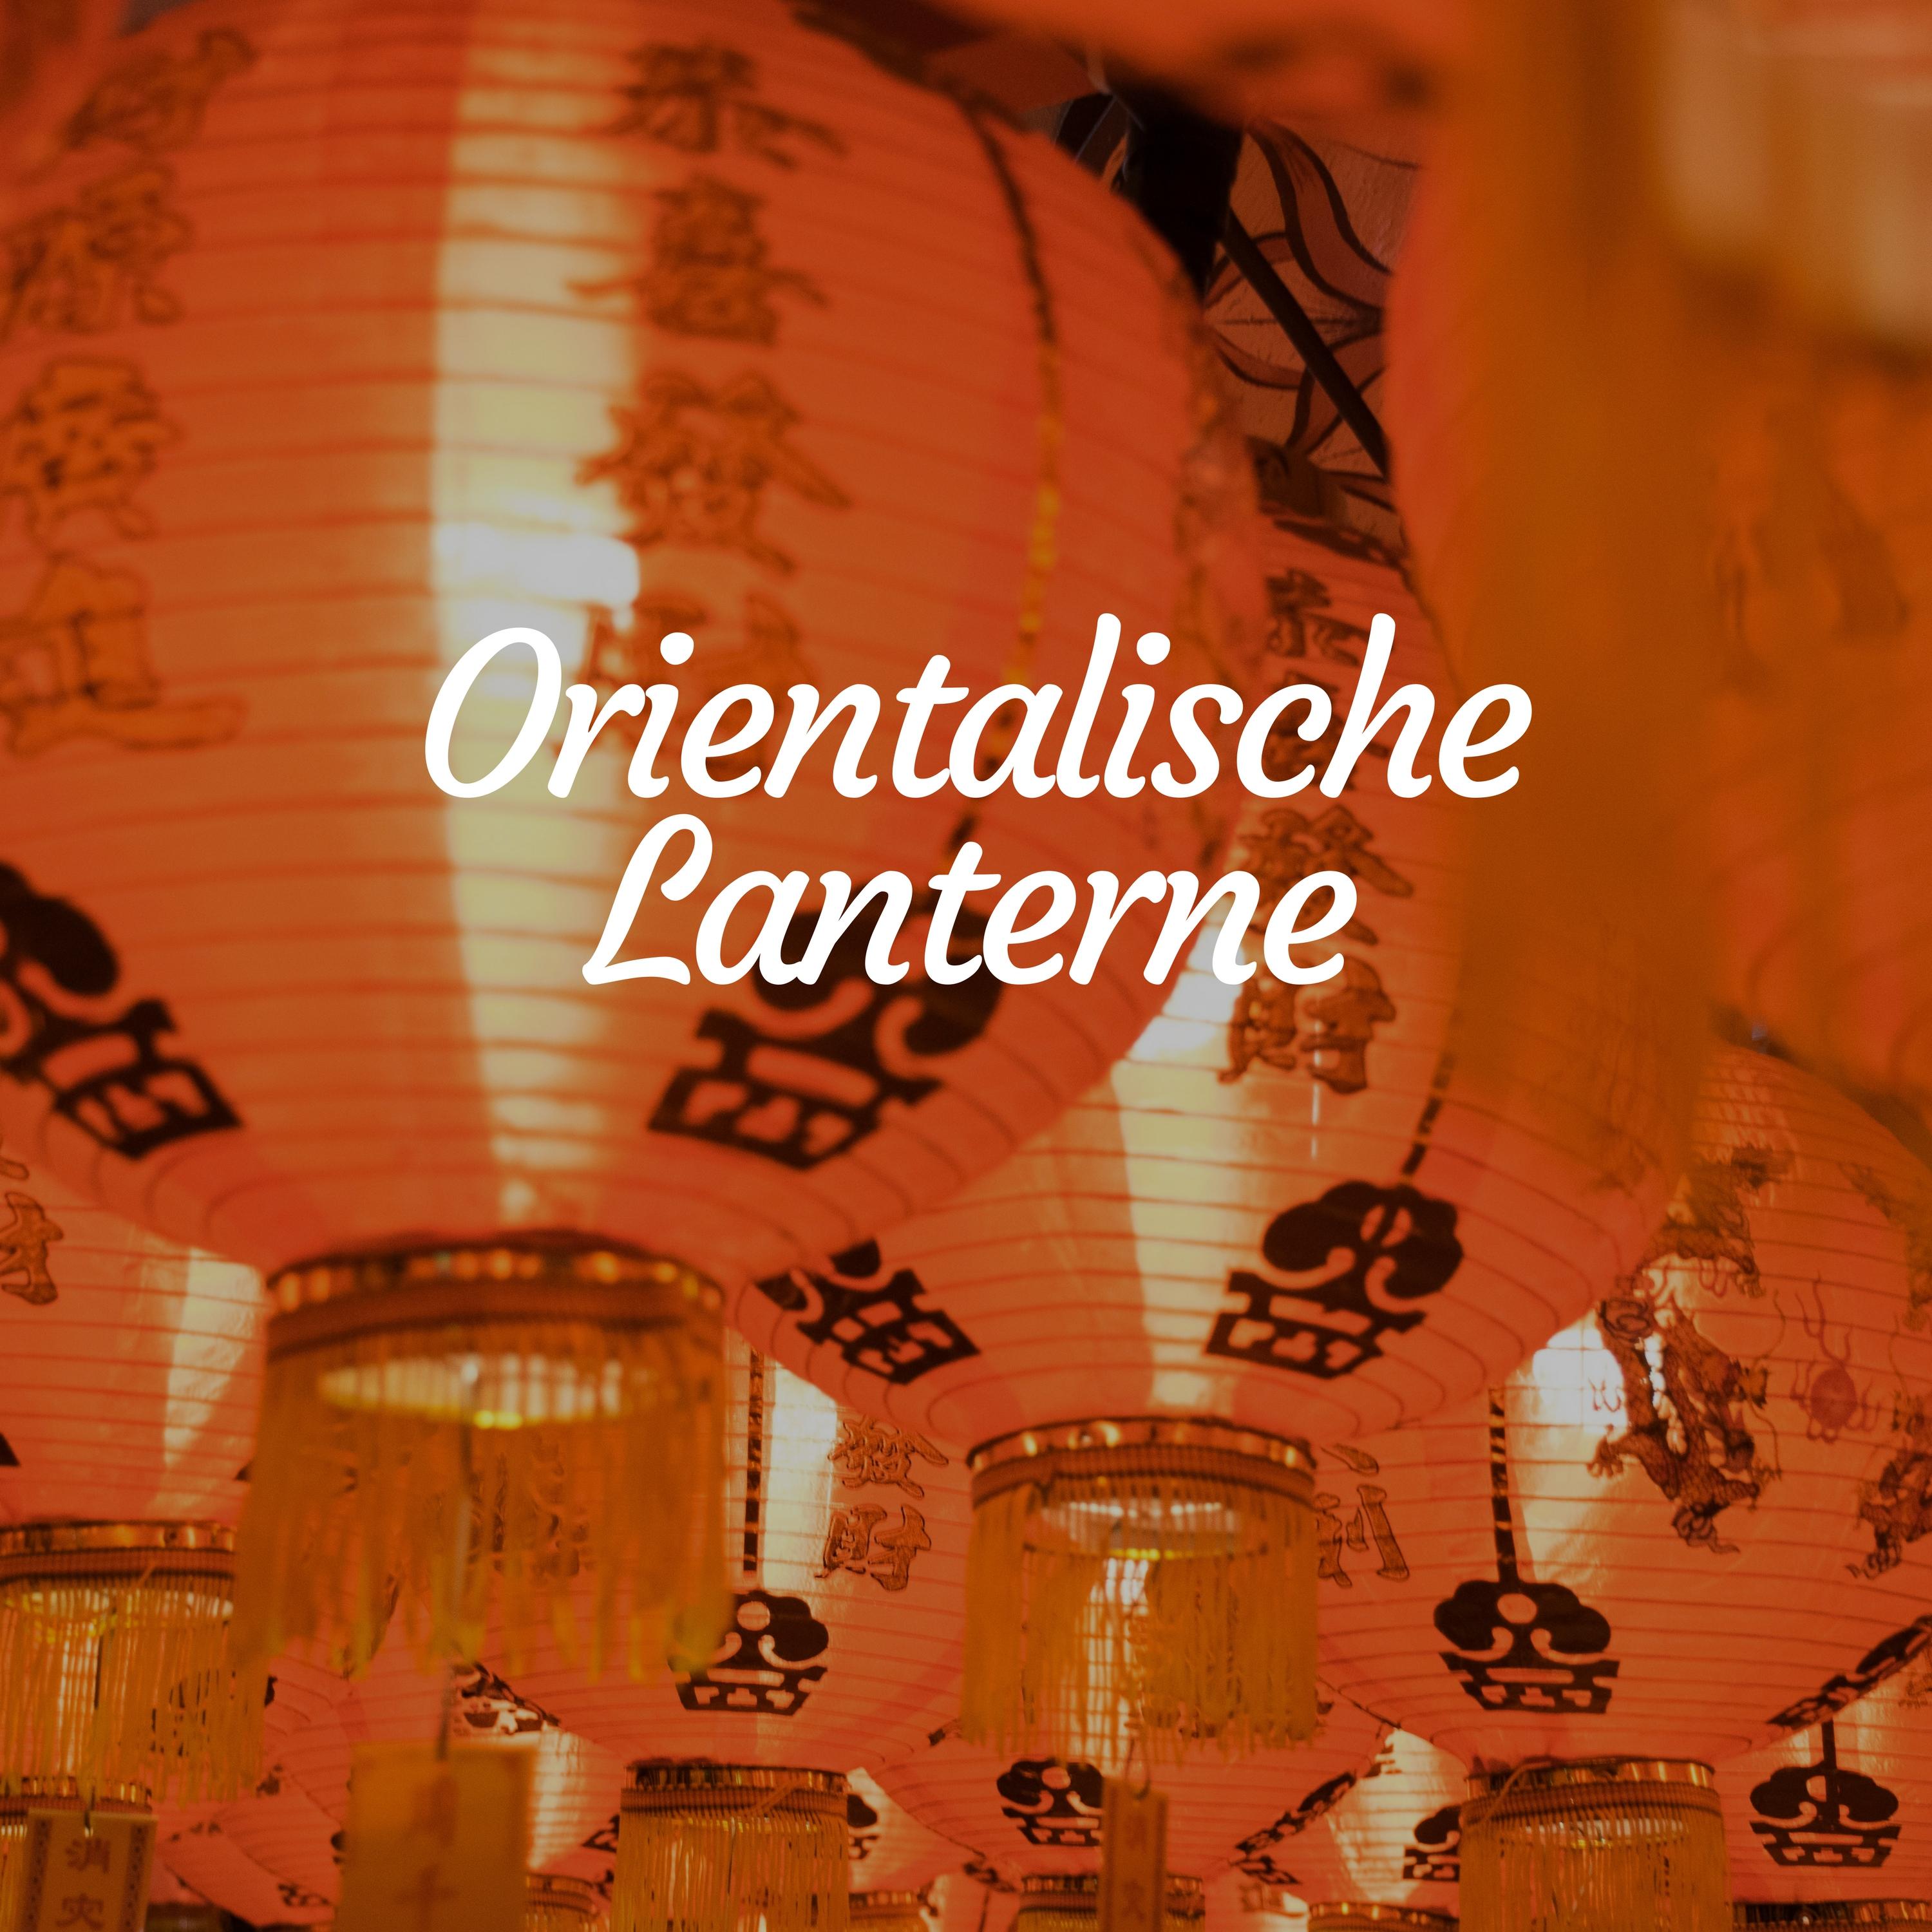 Orientalische Lanterne - Musik aus China und Japanische Spa-Musik, Massage Musik